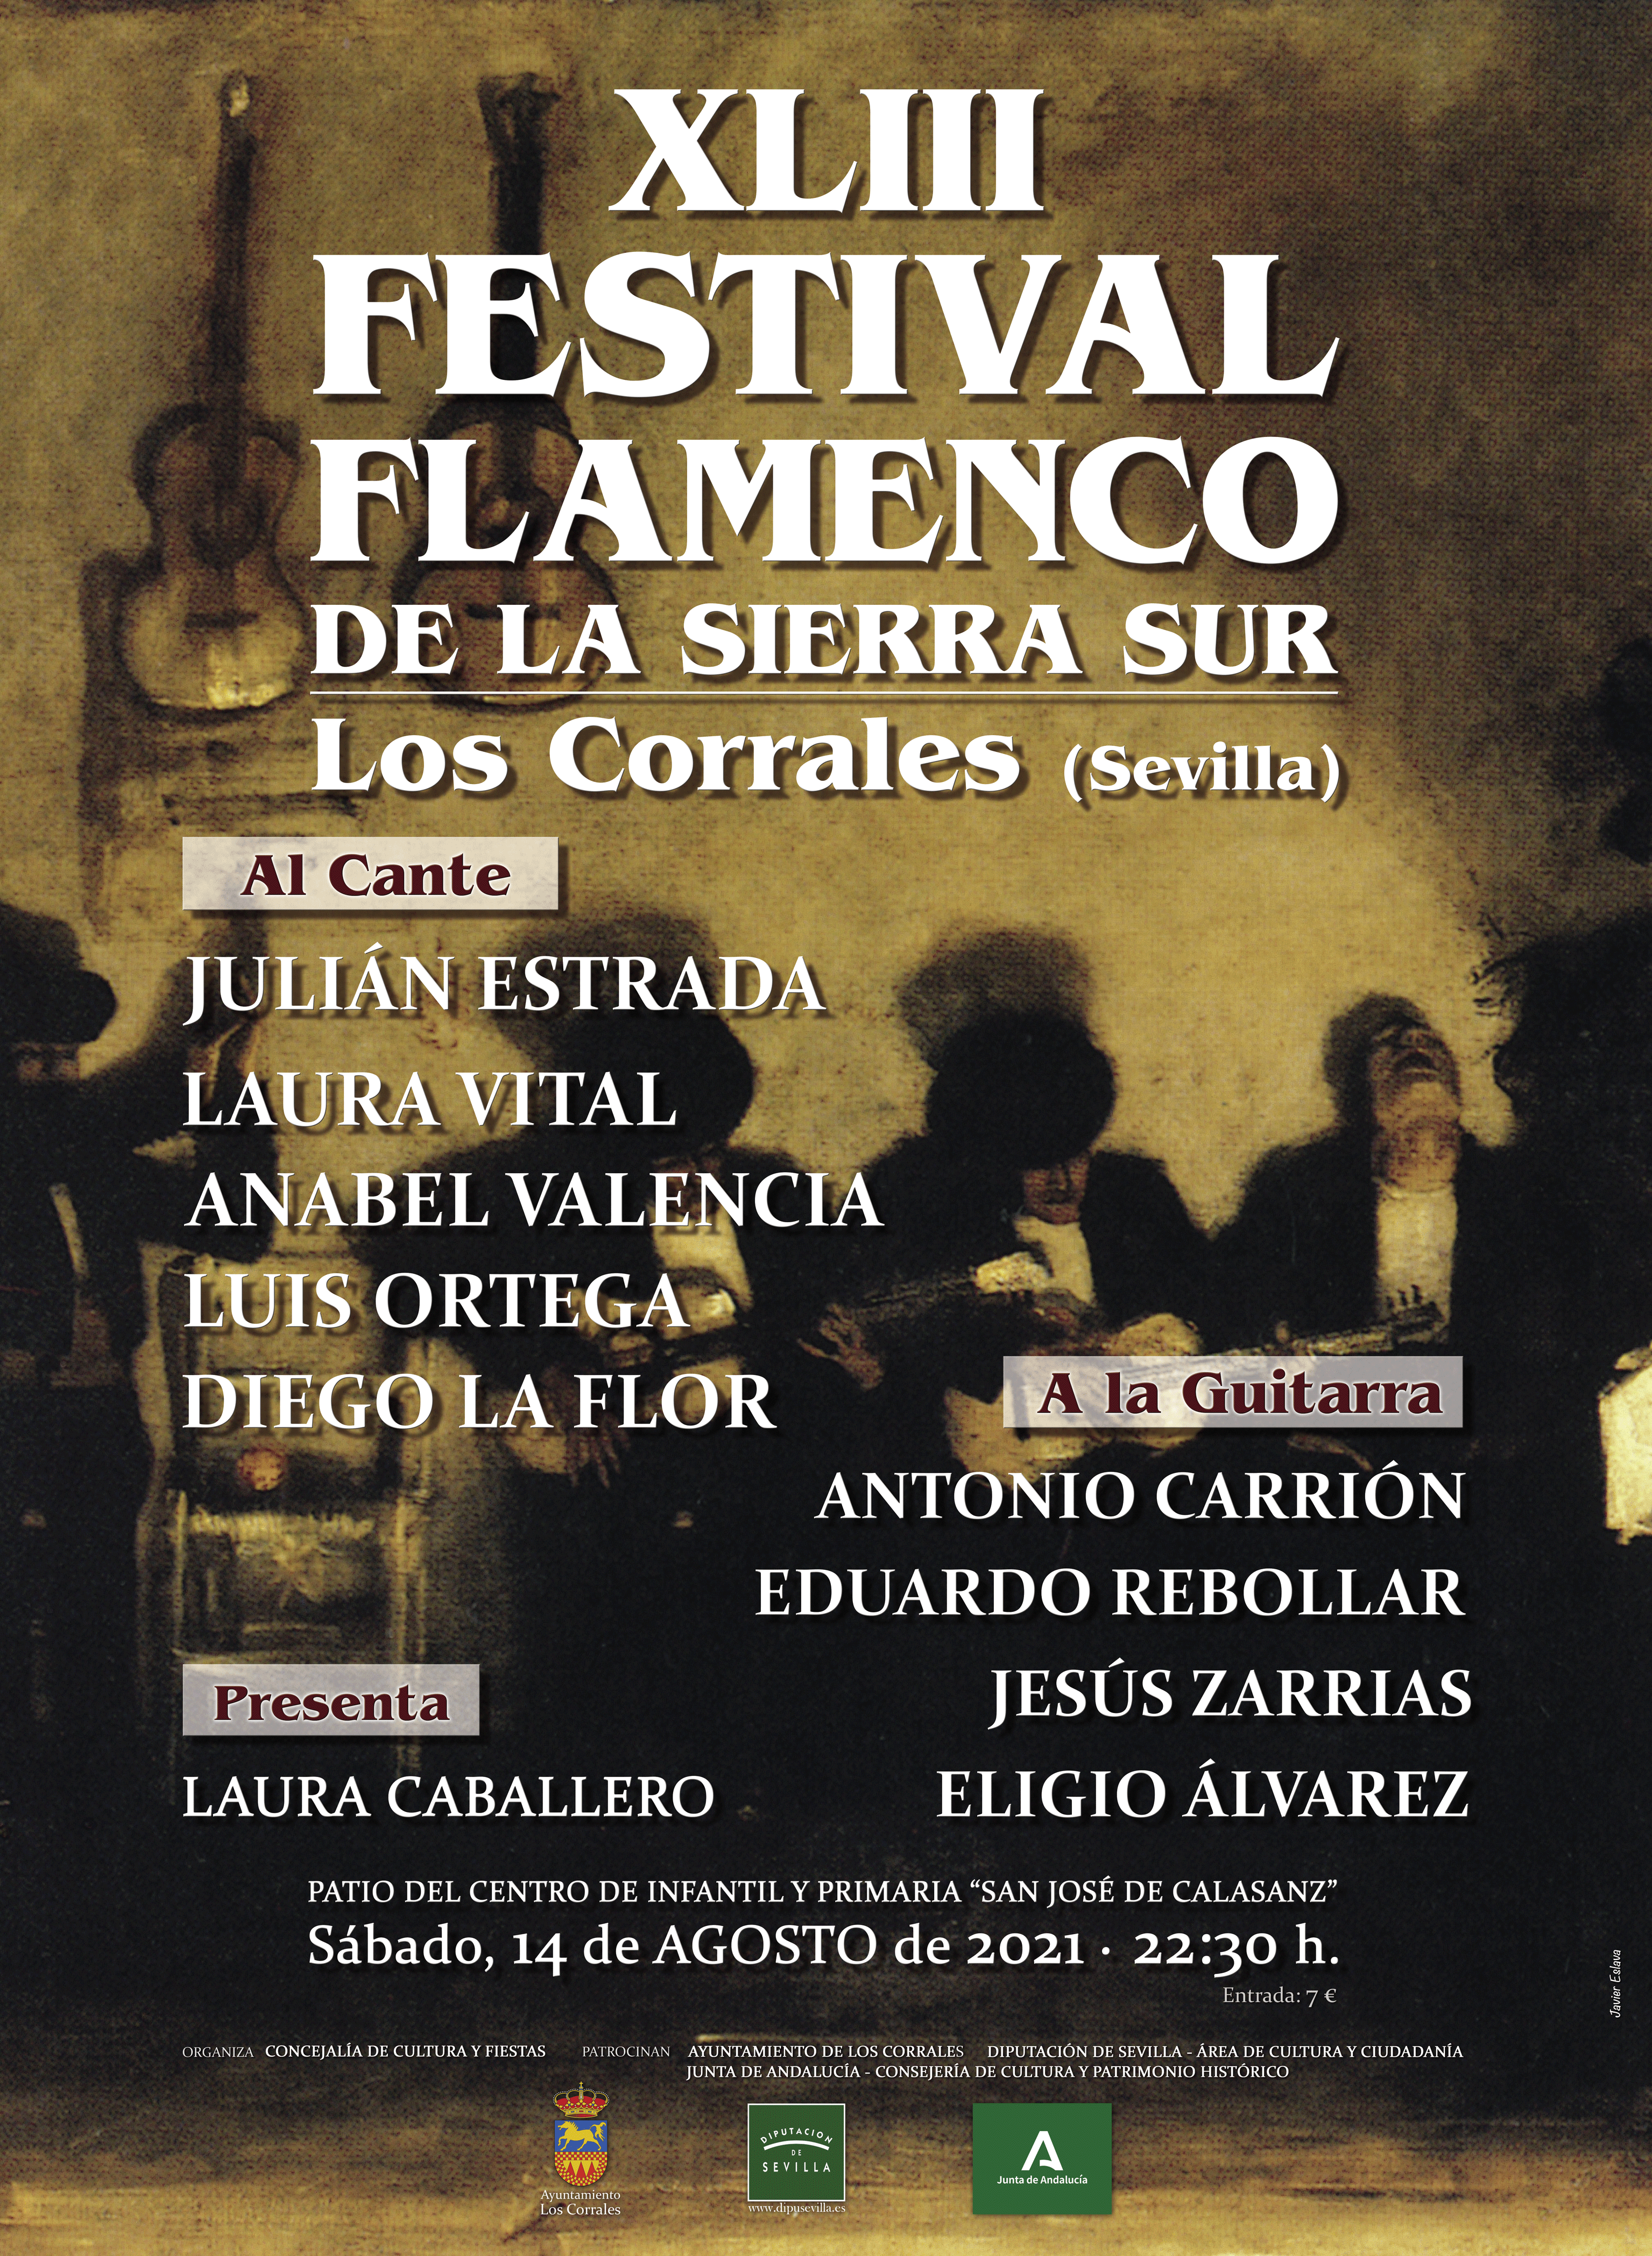 XLIII-FESTIVAL-FLAMENCO-DE-LA-SIERRA-SUR---LOS-CORRALES-2021(1)